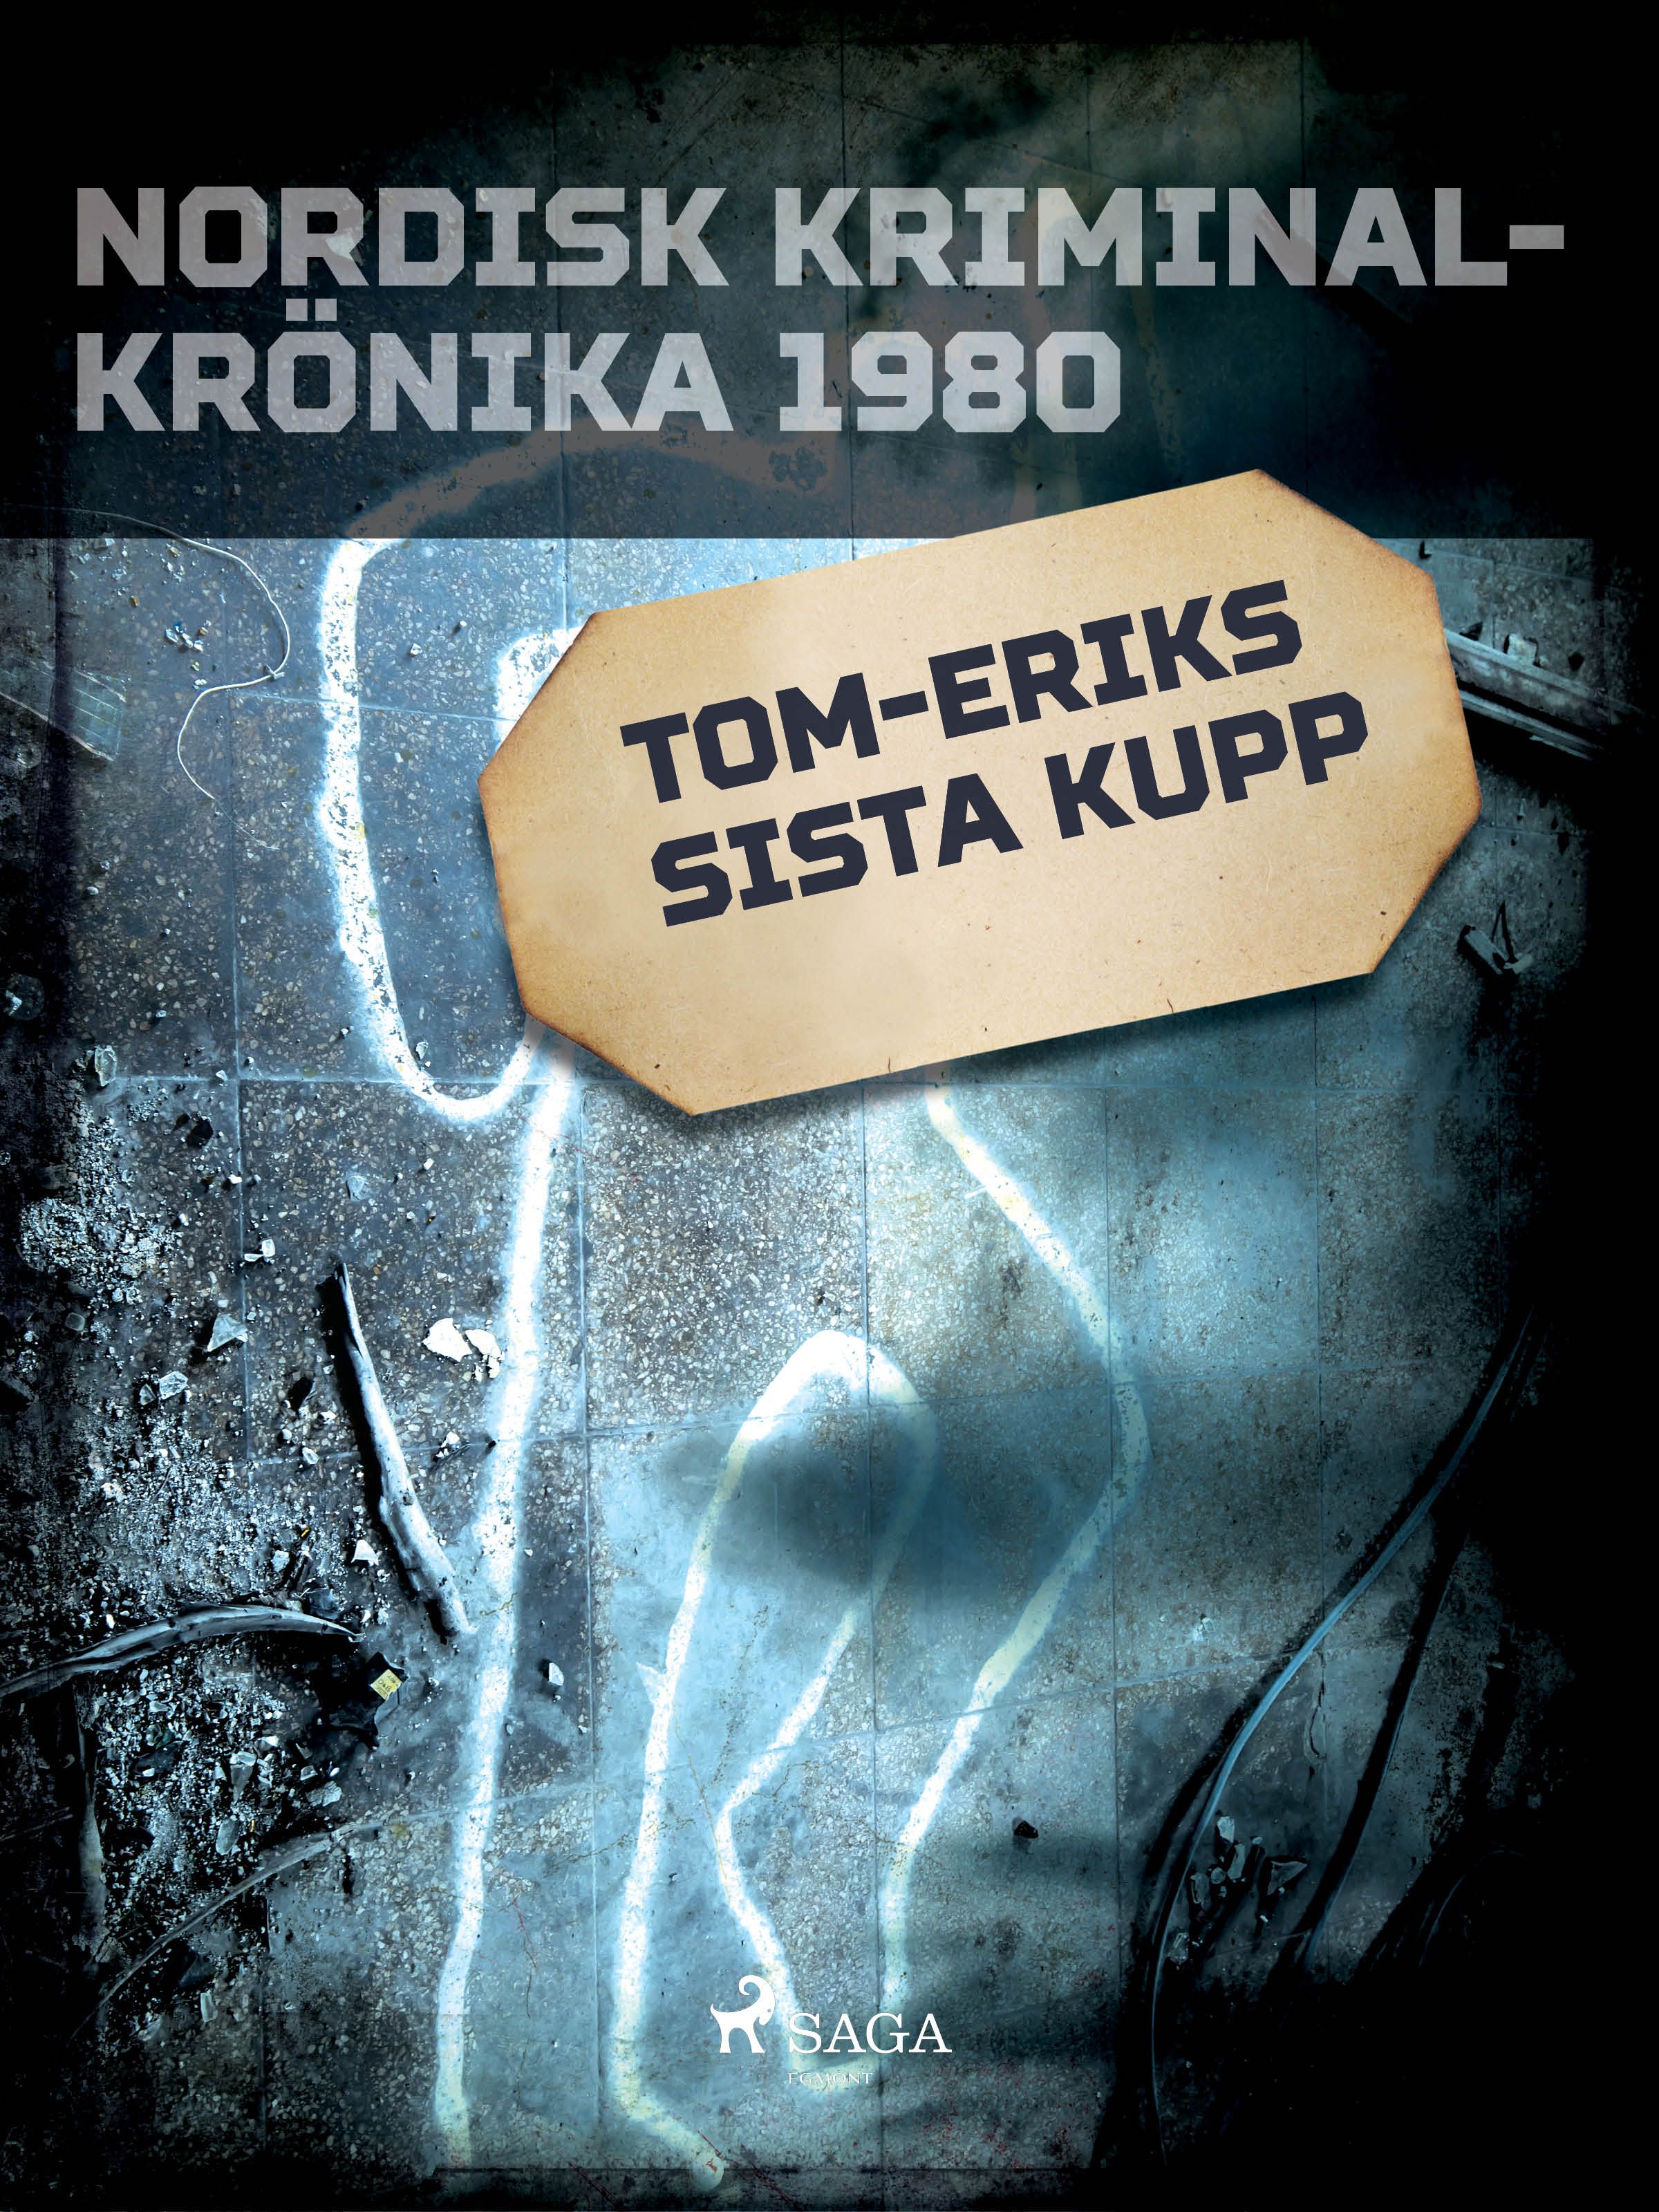 Tom-Eriks sista kupp, e-bok av Diverse